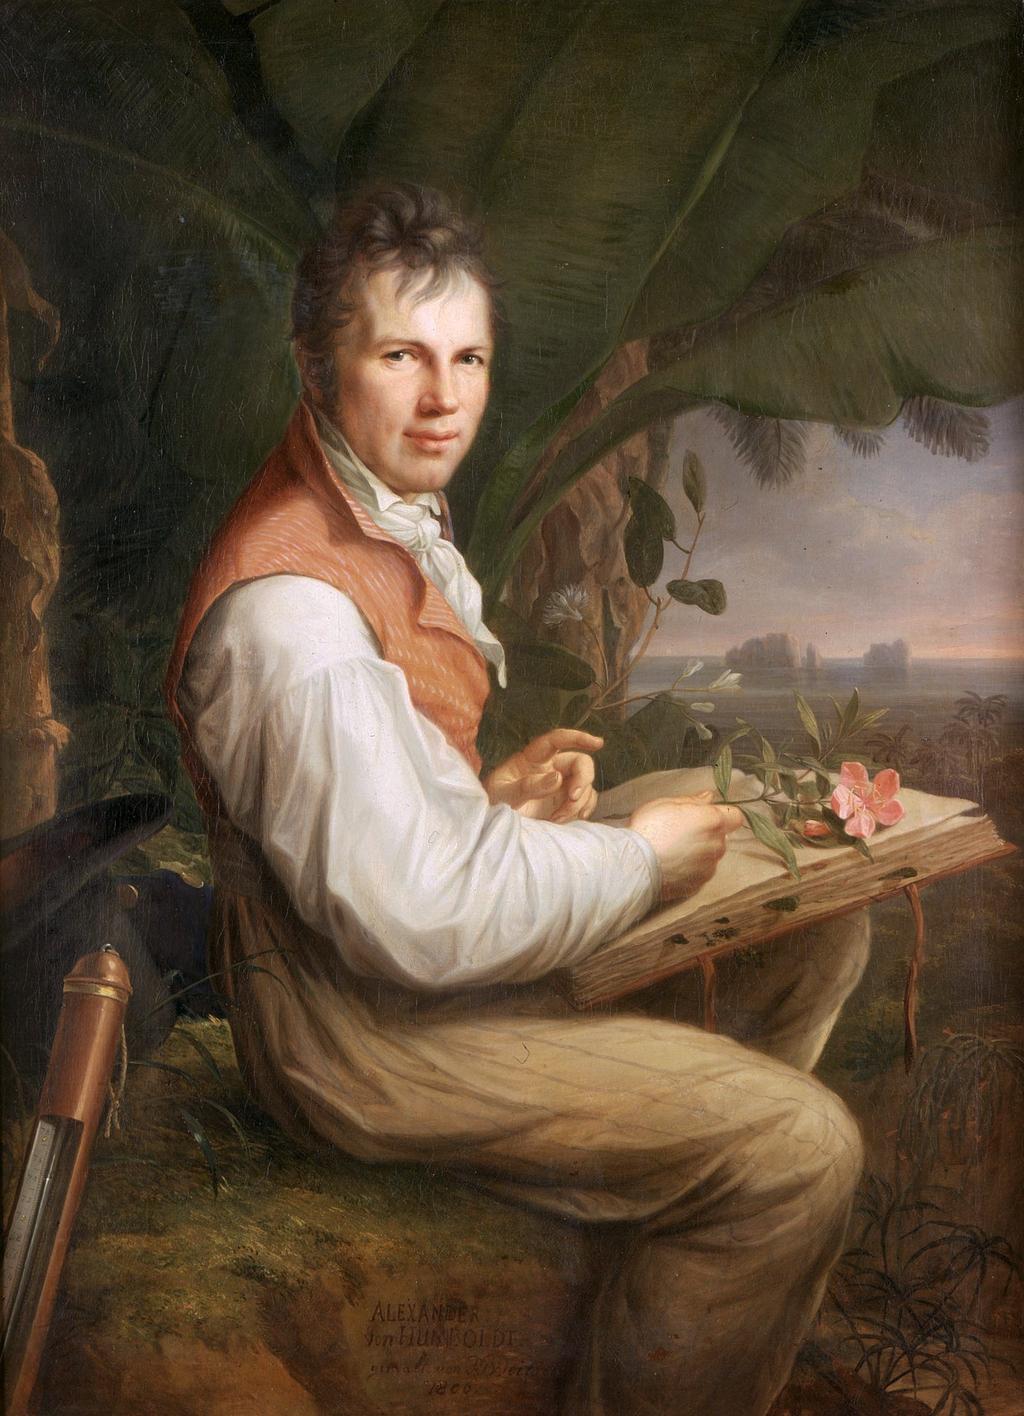 Werner & νεπτουνισµός Alexander von Humboldt (1769-1859) -> Πρώσος φυσιοδίφης, από τους πιο διάσηµους εξερευνητές του 19ου αιώνα -> βλέπει από κοντά ηφαίστεια στις Άνδεις (στη Ν.